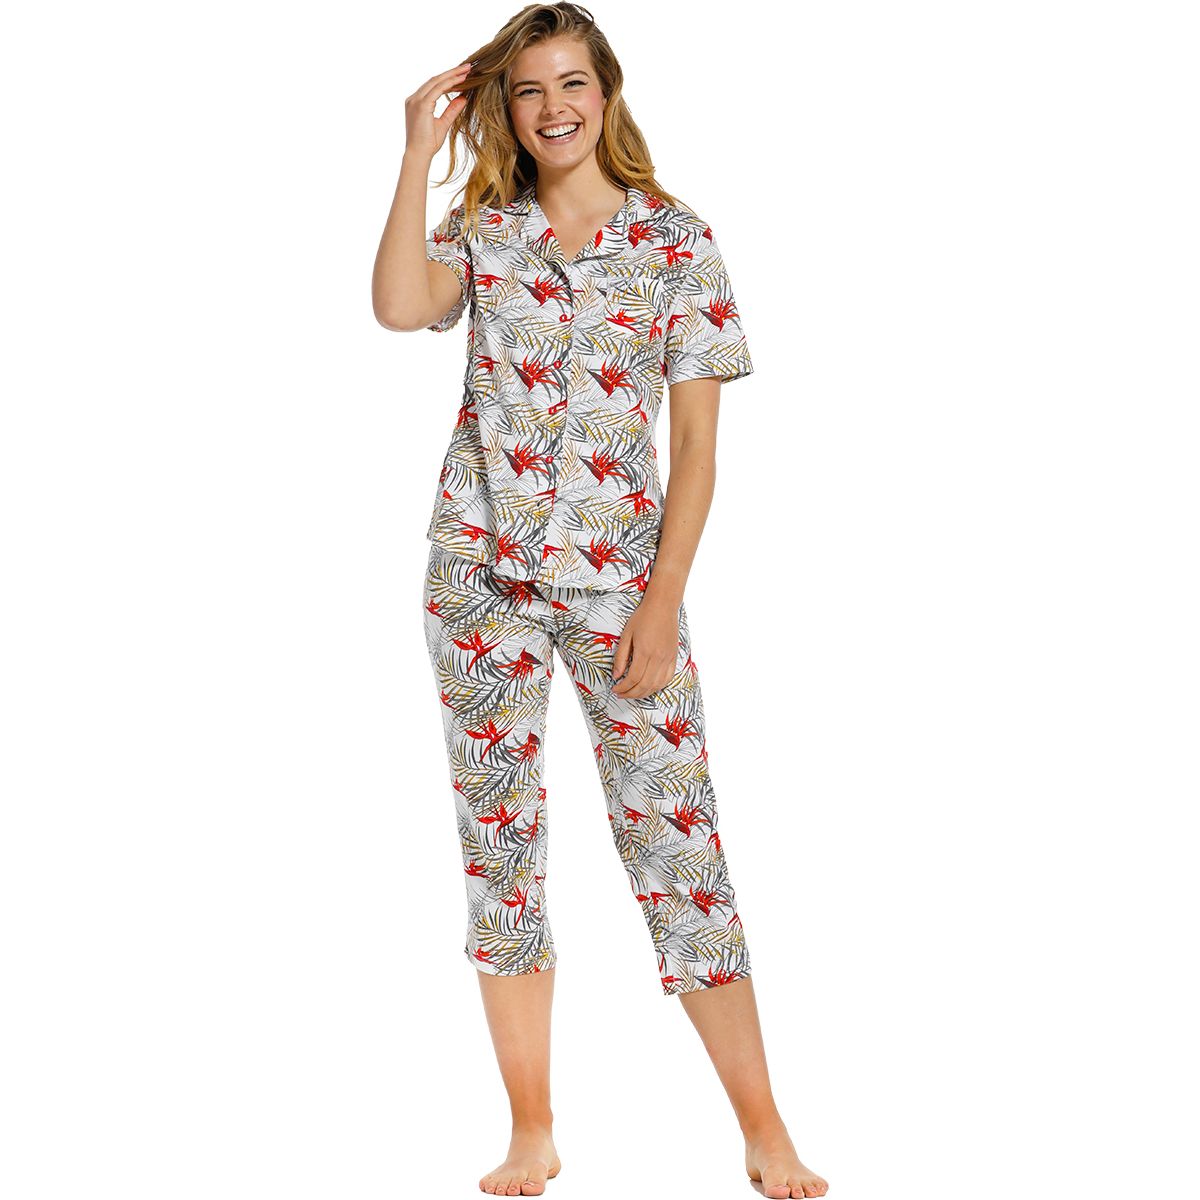 Katoenen dames pyjama | verzending | Gratis retour | Snel in huis | Online de mooiste nachthemden, ondermode en meer